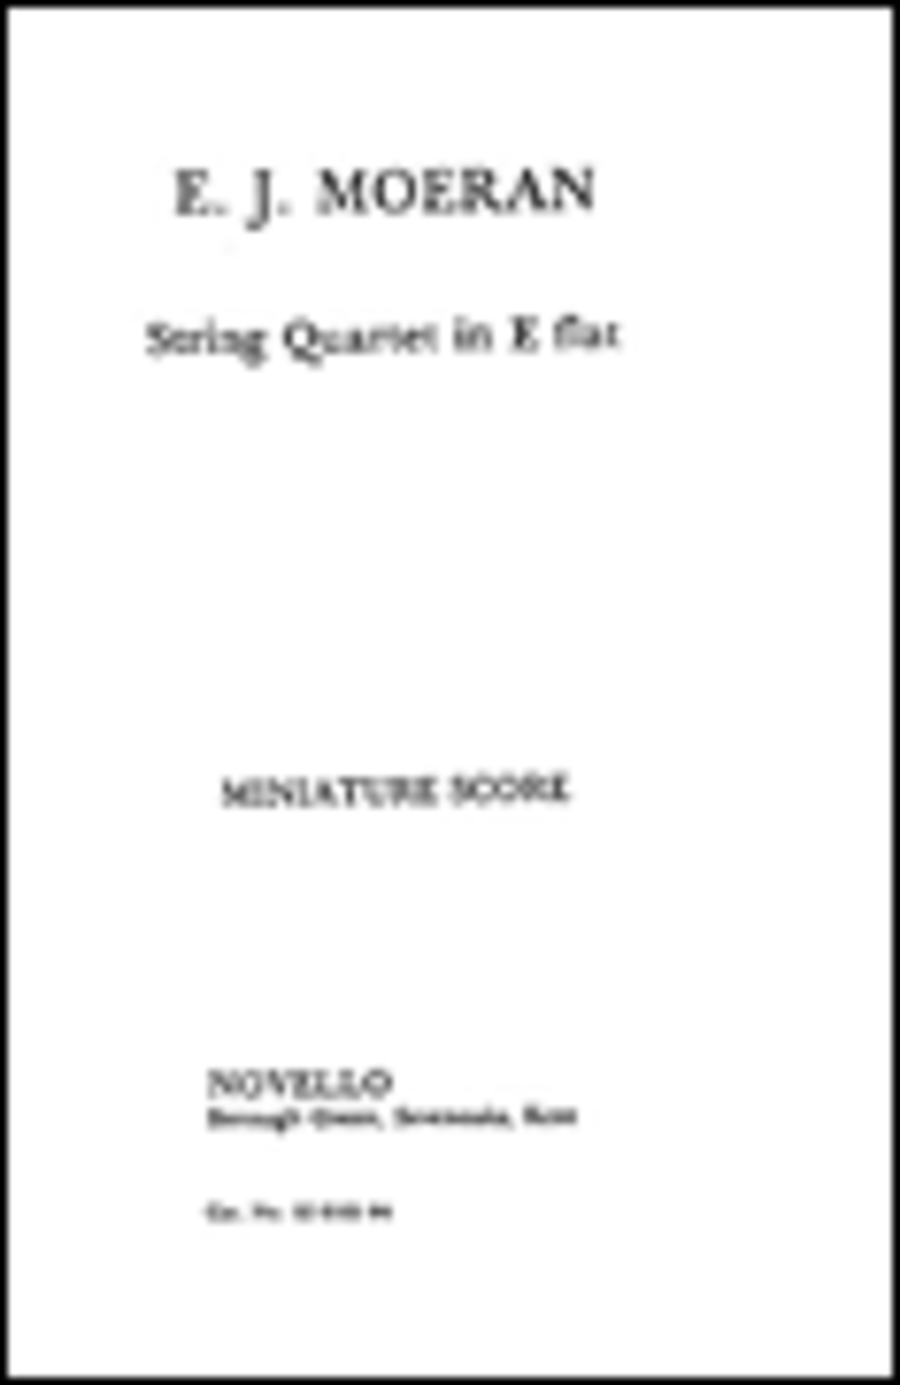 E.J. Moeran: String Quartet In E Flat (Score)